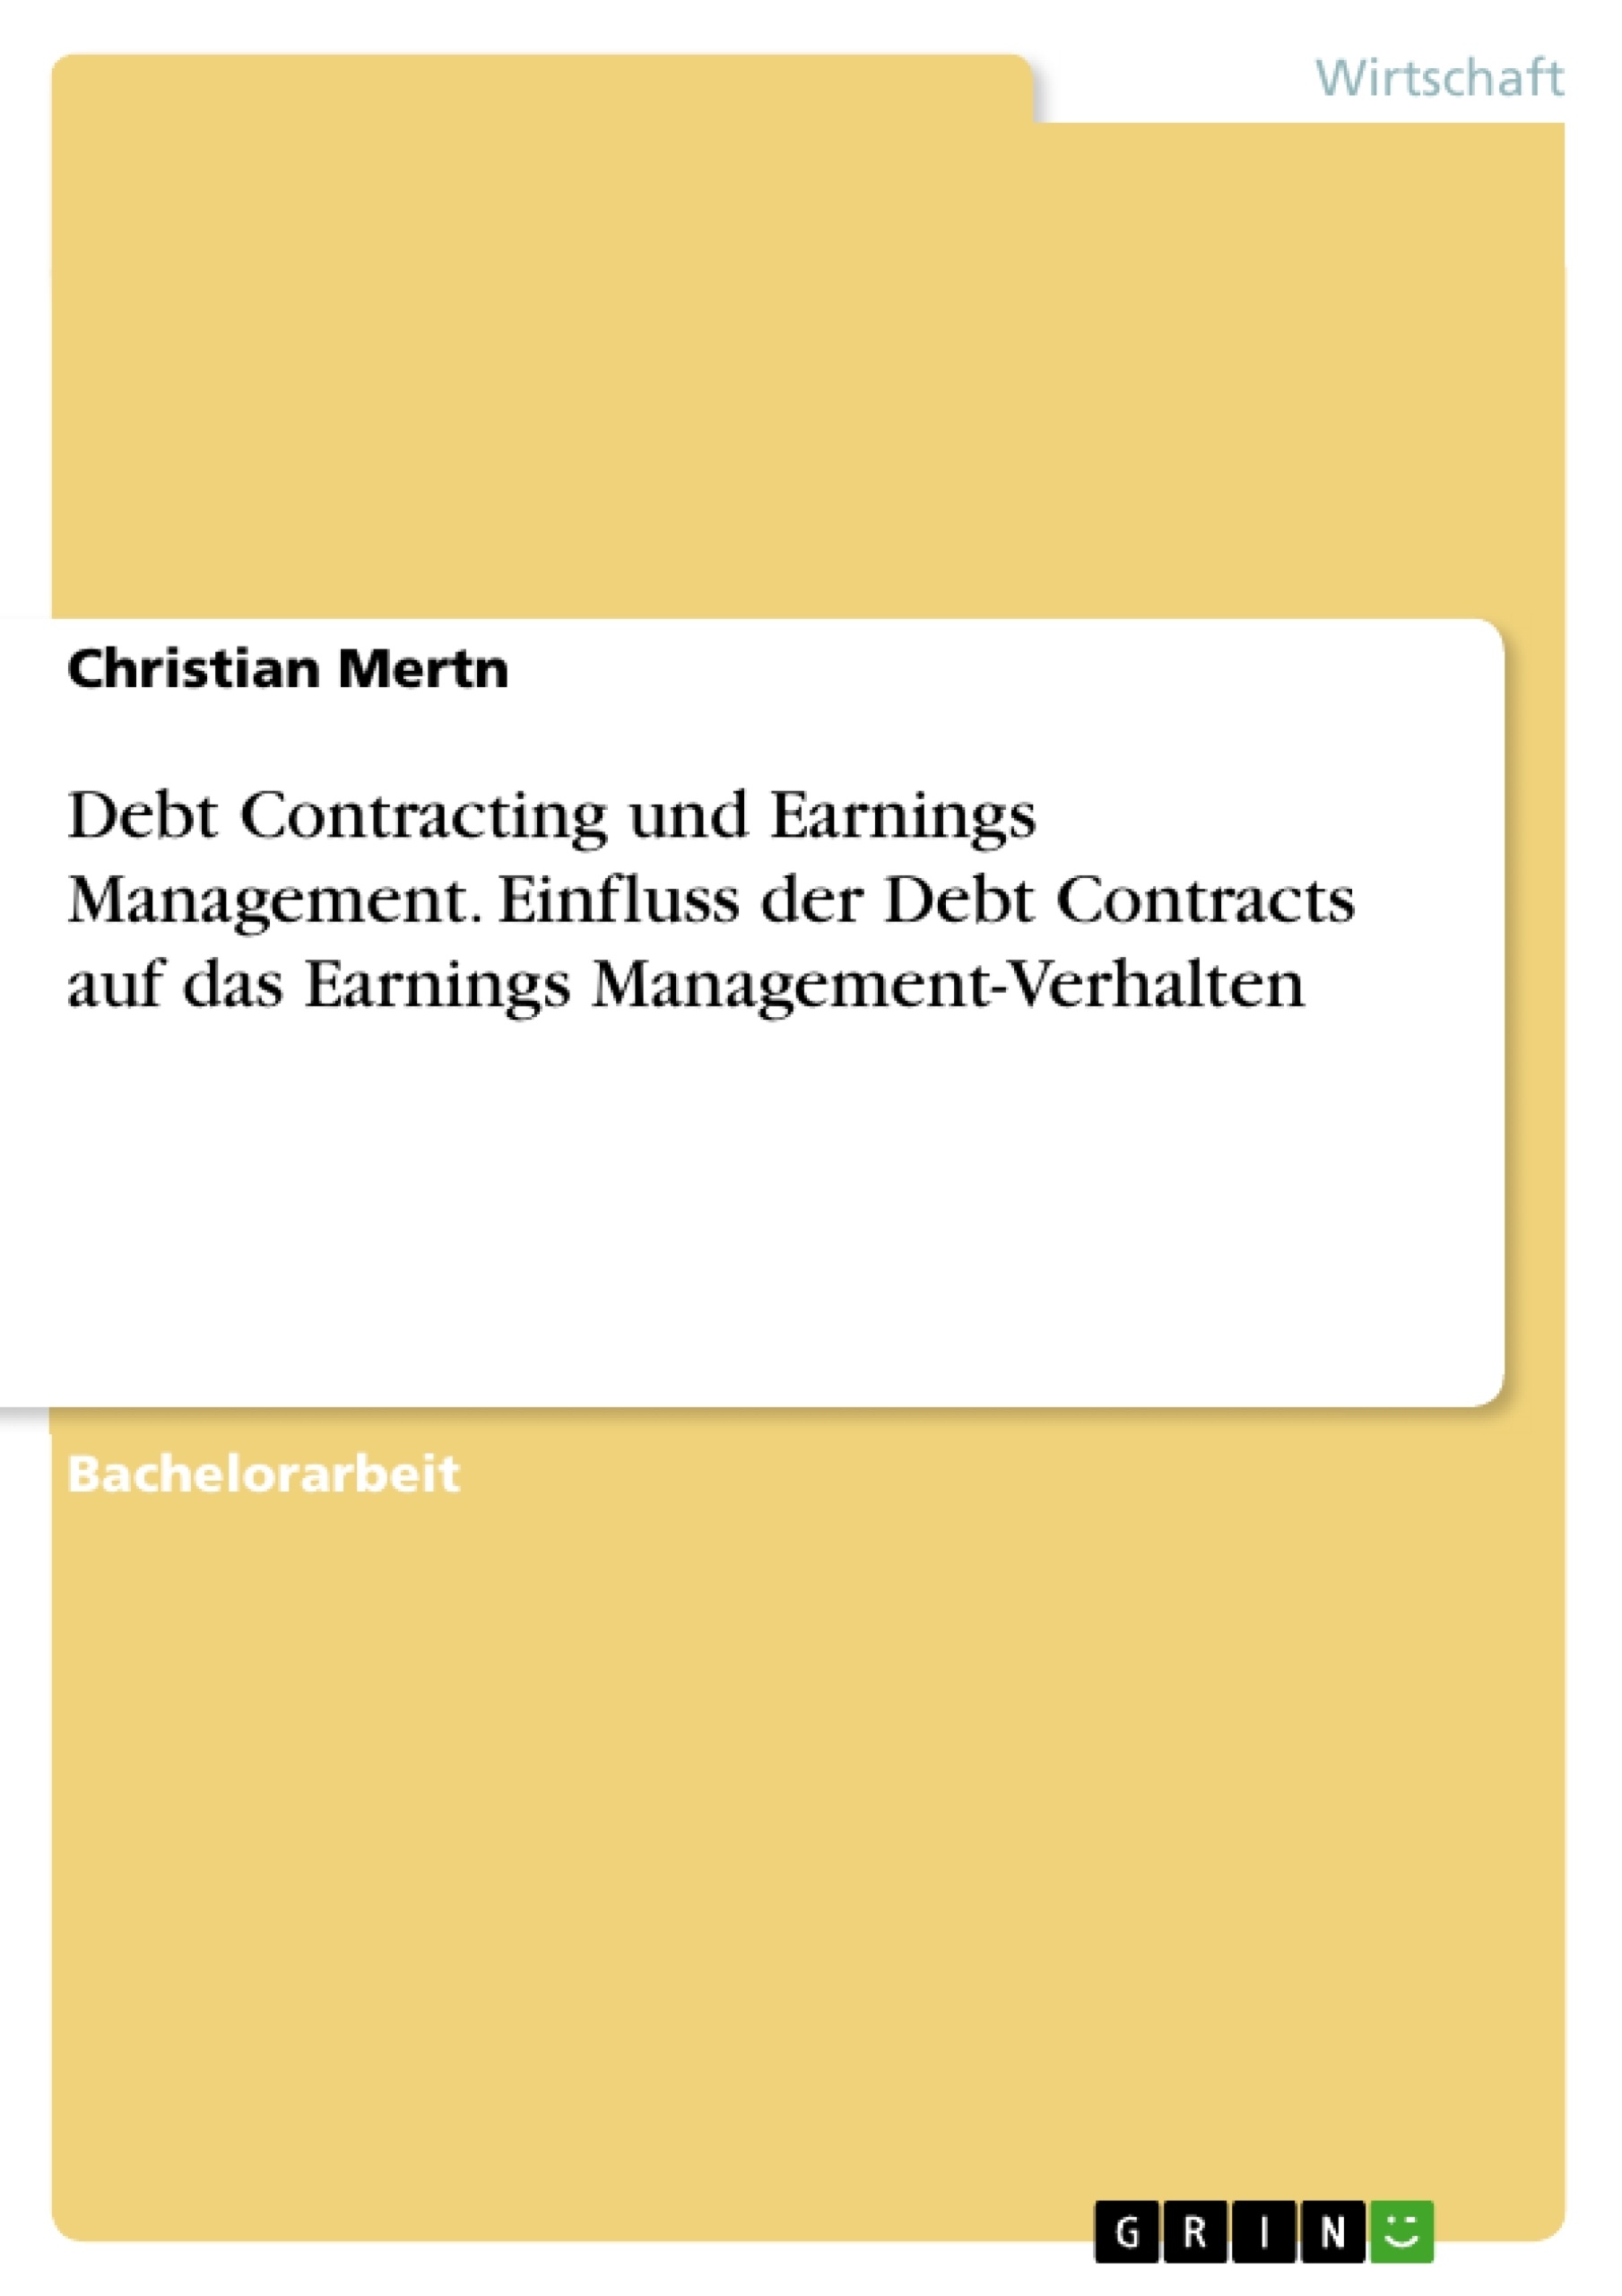 Title: Debt Contracting und Earnings Management. Einfluss der Debt Contracts auf das Earnings Management-Verhalten